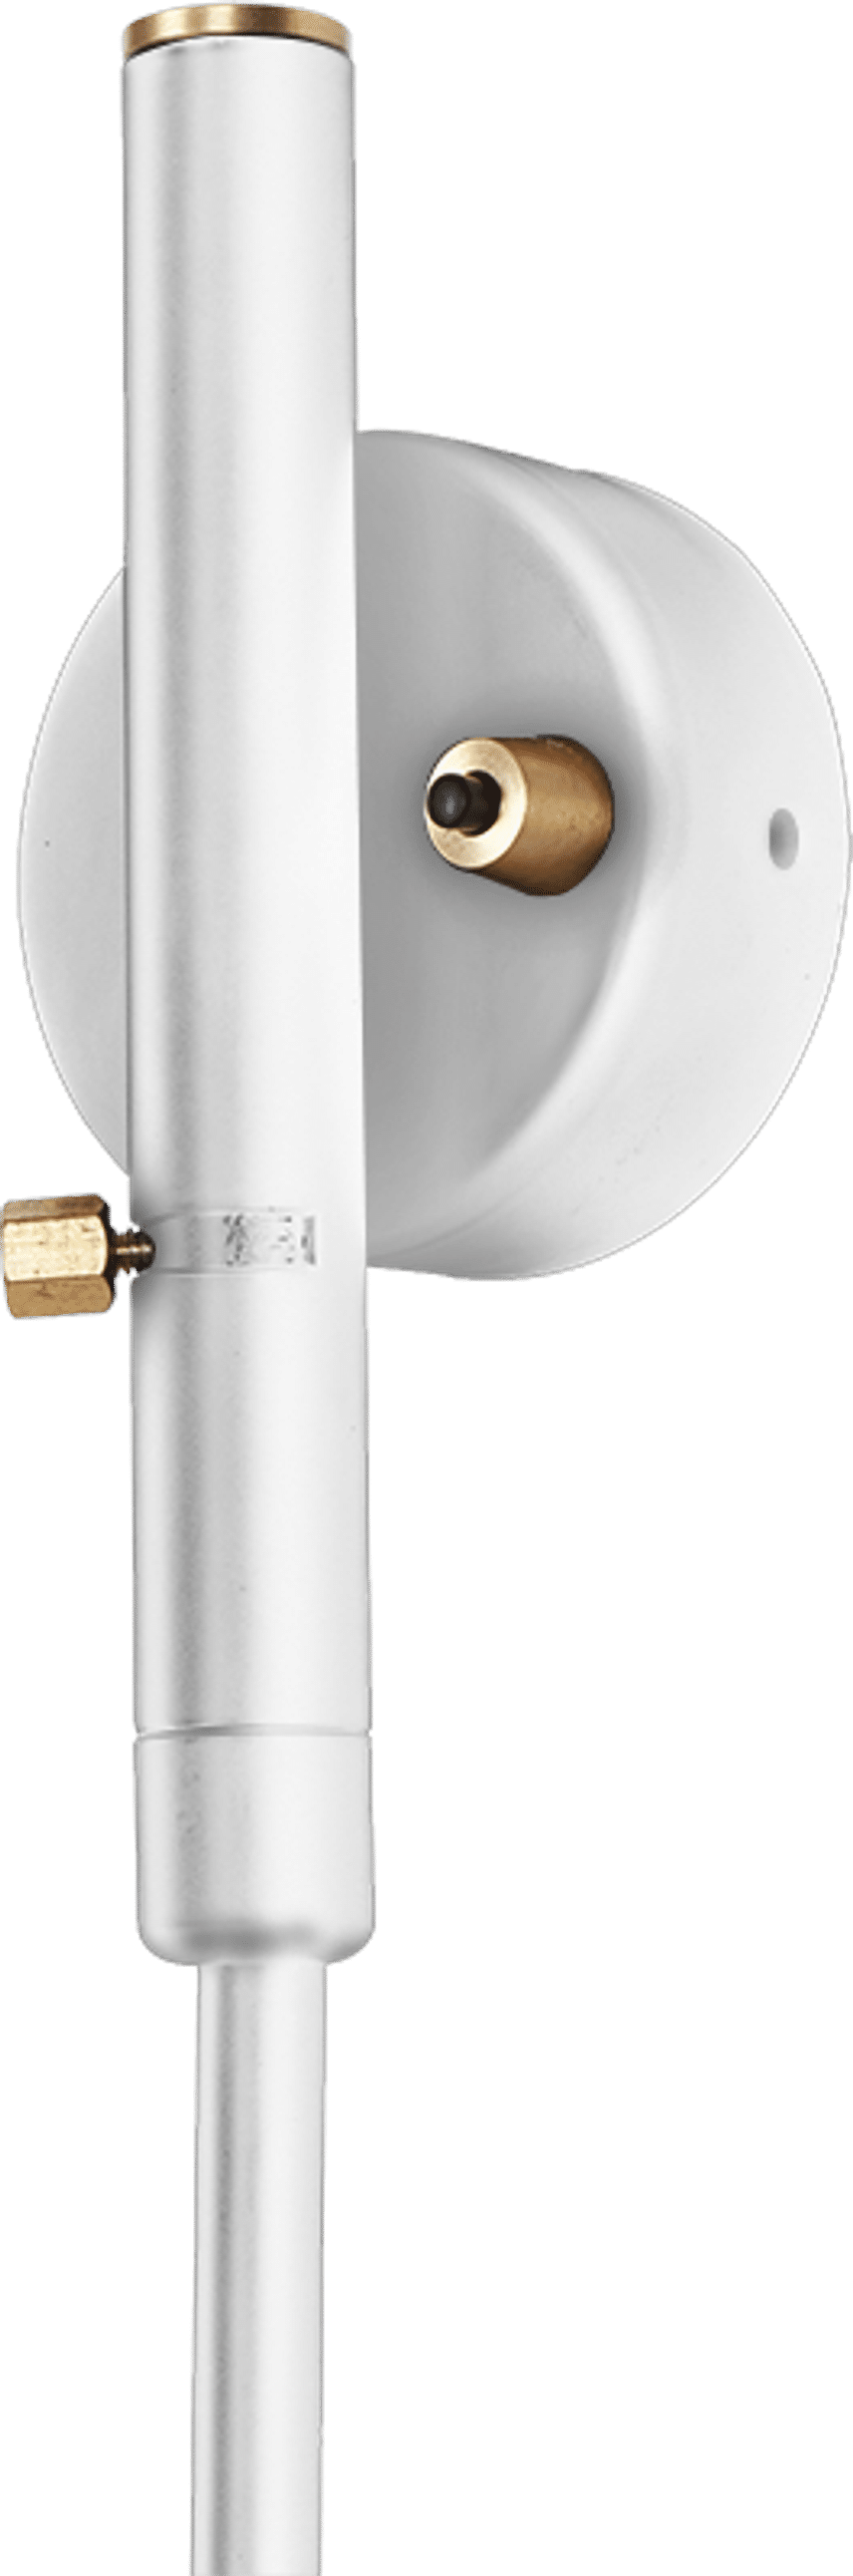 Lámpara de 1 brazo giratorio - Pivote de latón White image.